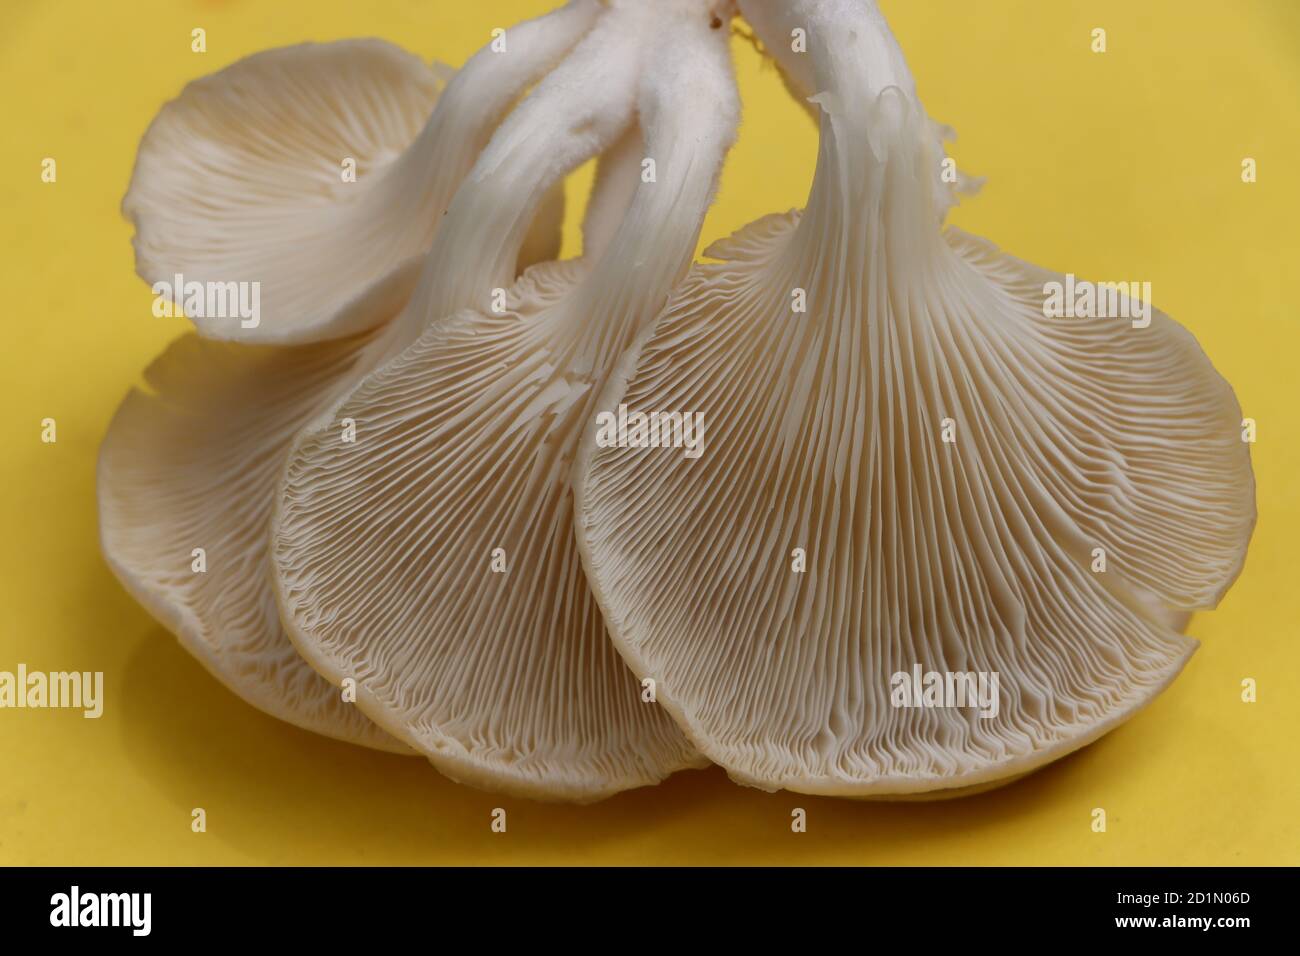 Oyster mushroom or Pleurotus mushroom on yellow background Stock Photo